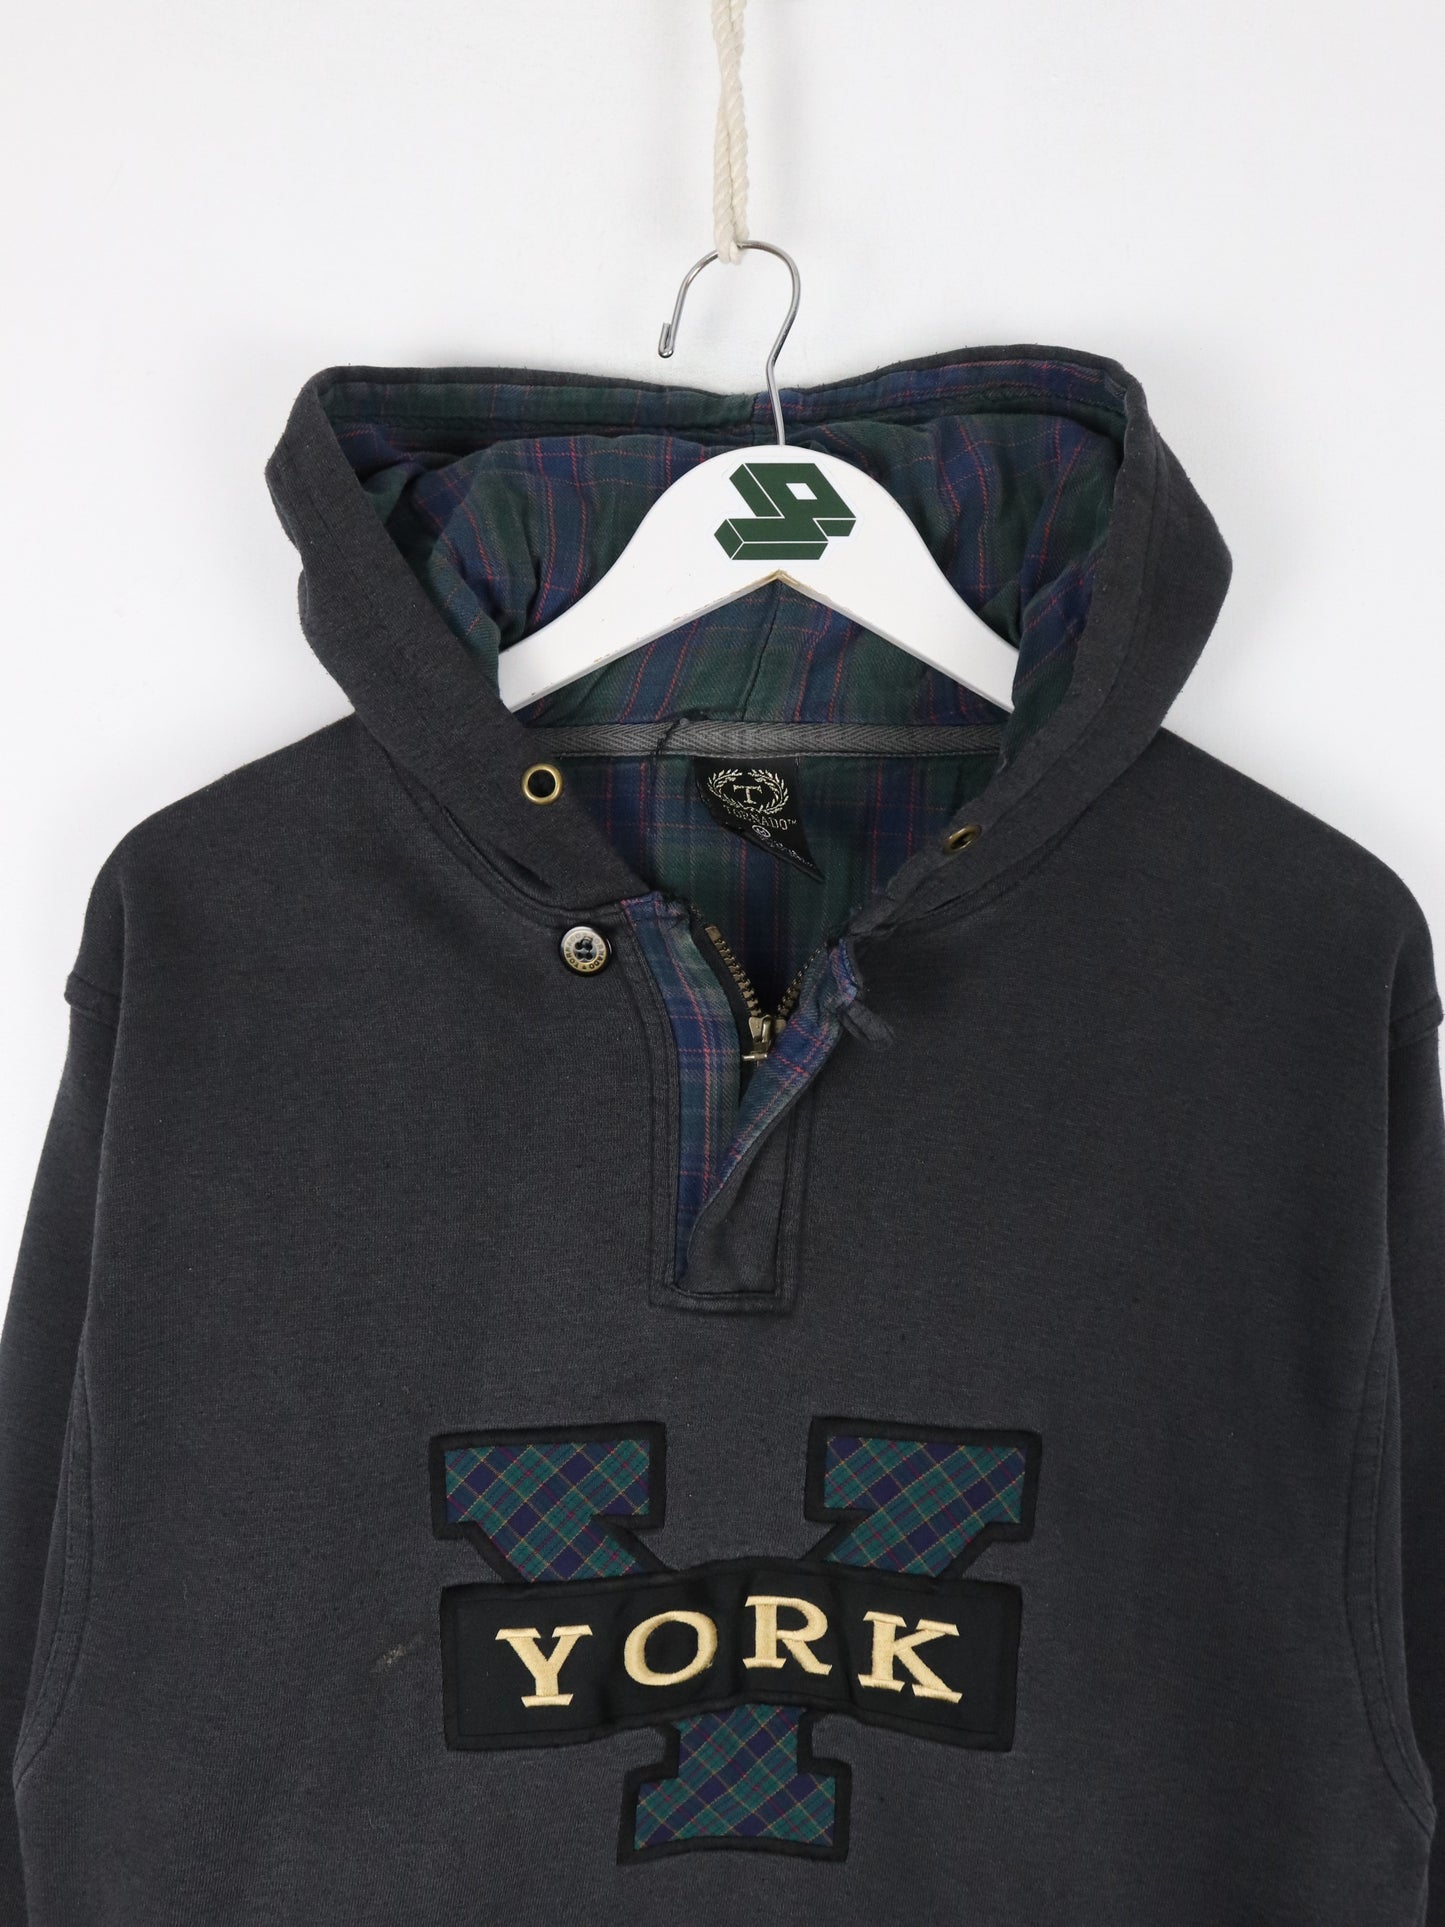 Vintage York Sweatshirt Mens Medium Black Quarter Zip Hoodie